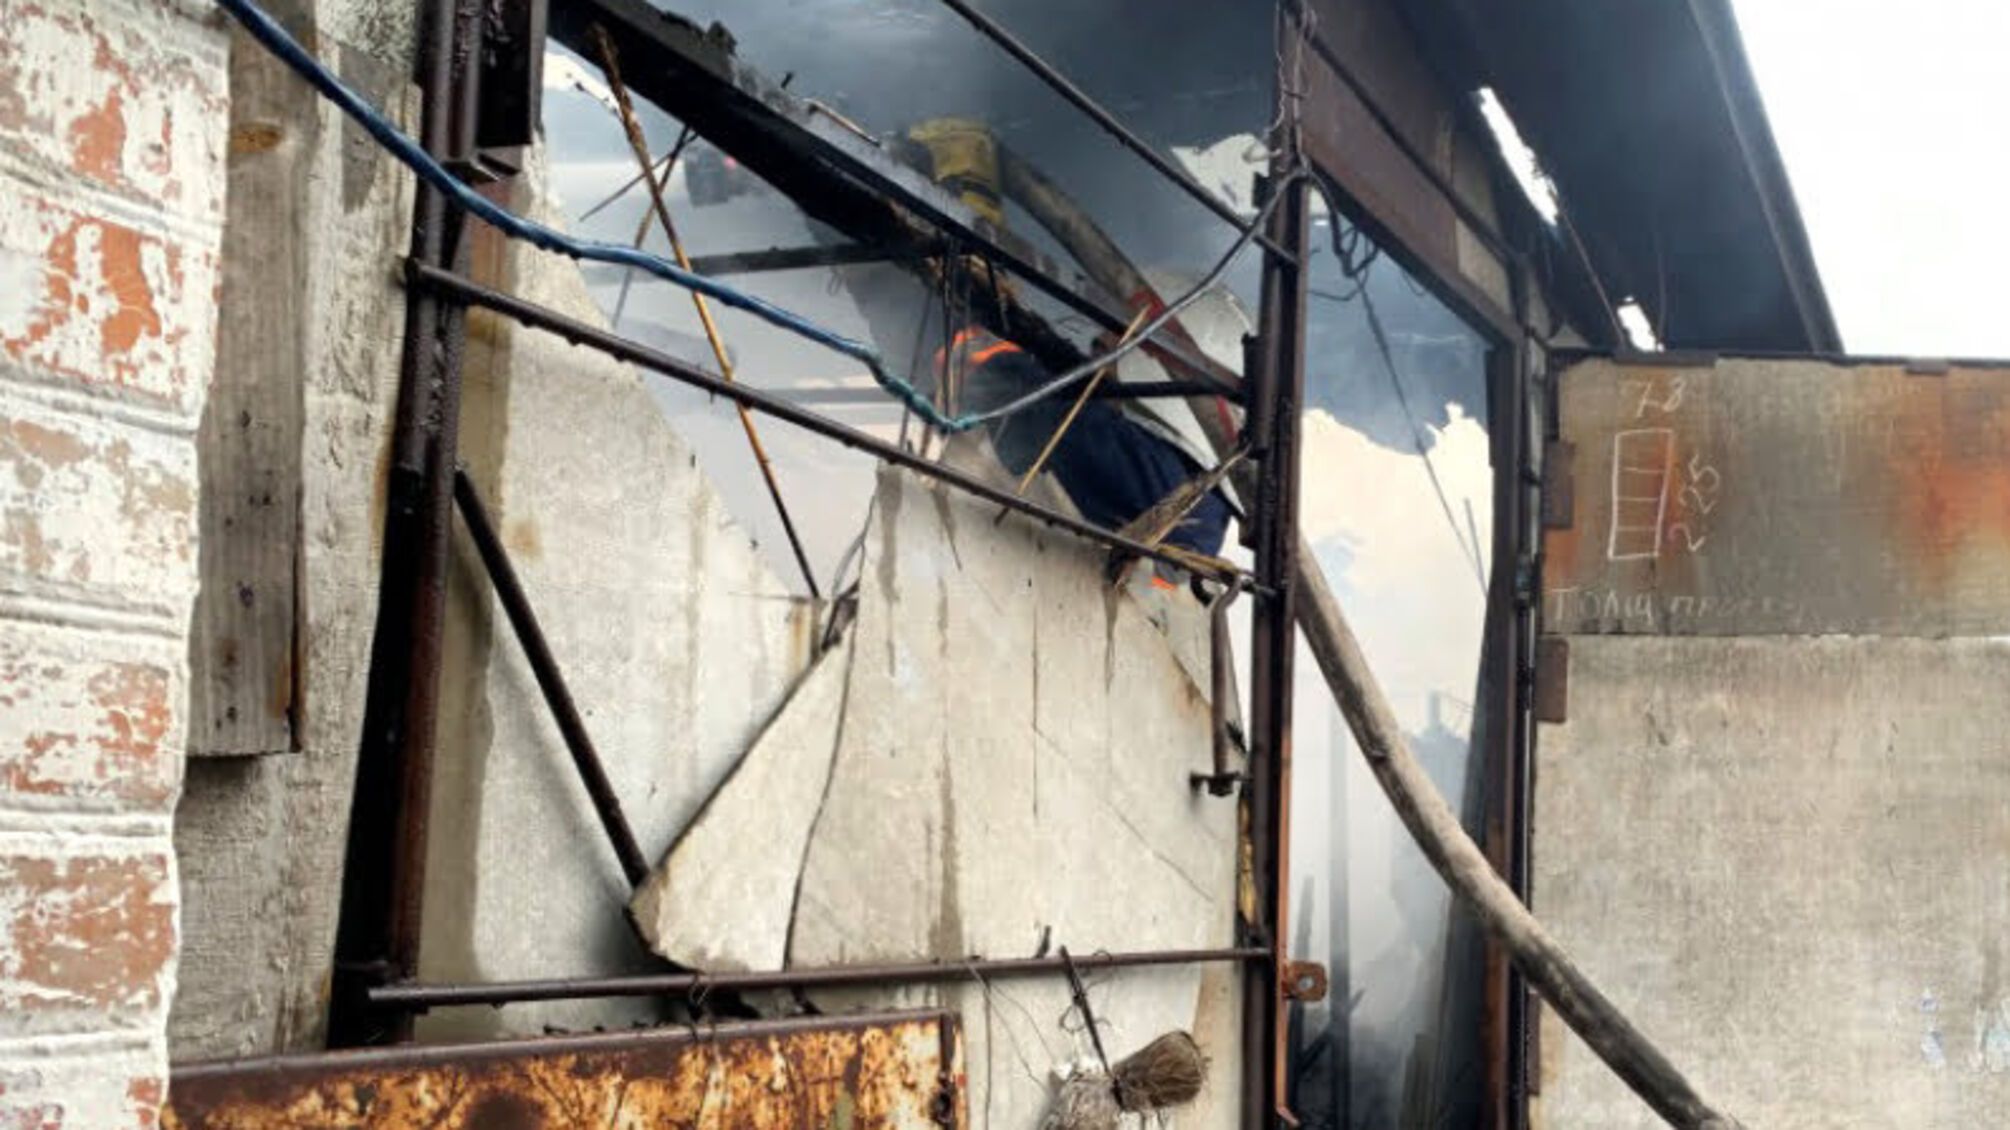 Полтавська область: рятувальники ліквідували пожежу в сіннику